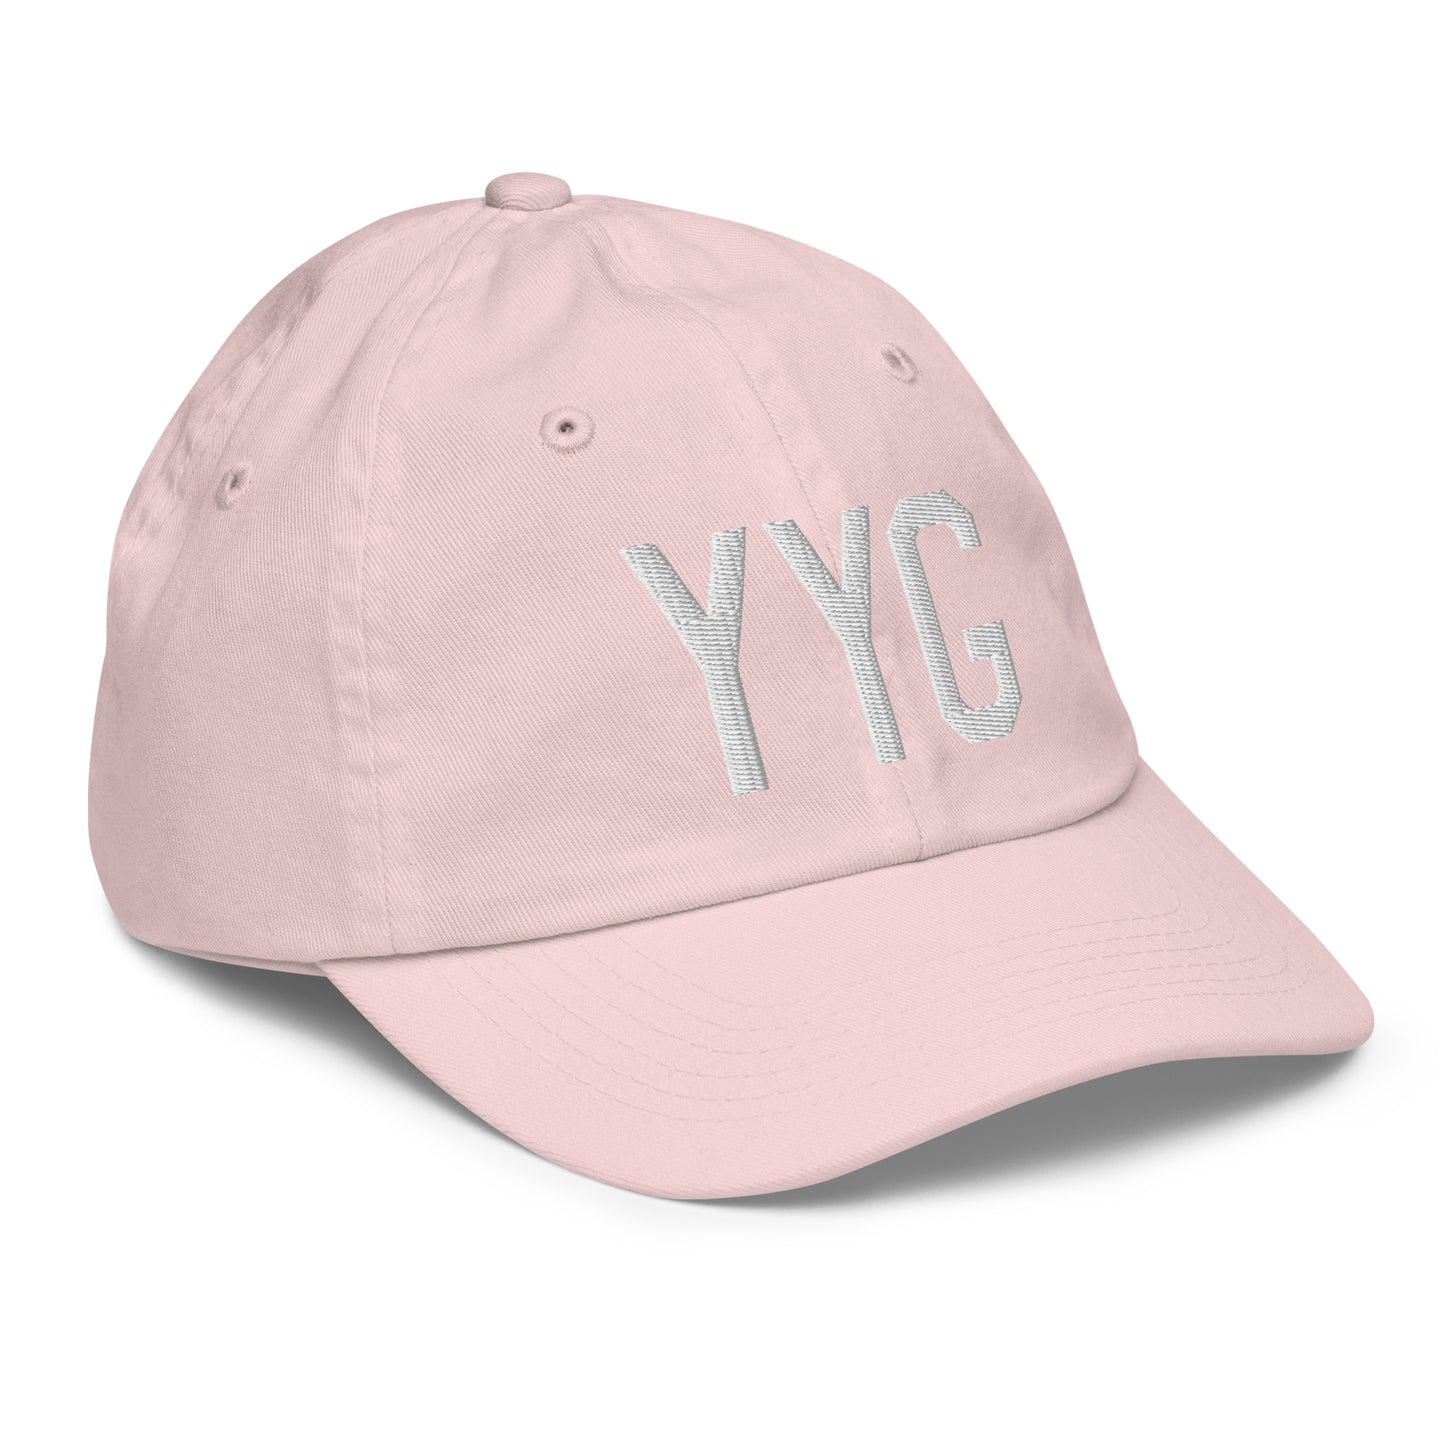 Airport Code Kid's Baseball Cap - White • YYG Charlottetown • YHM Designs - Image 32